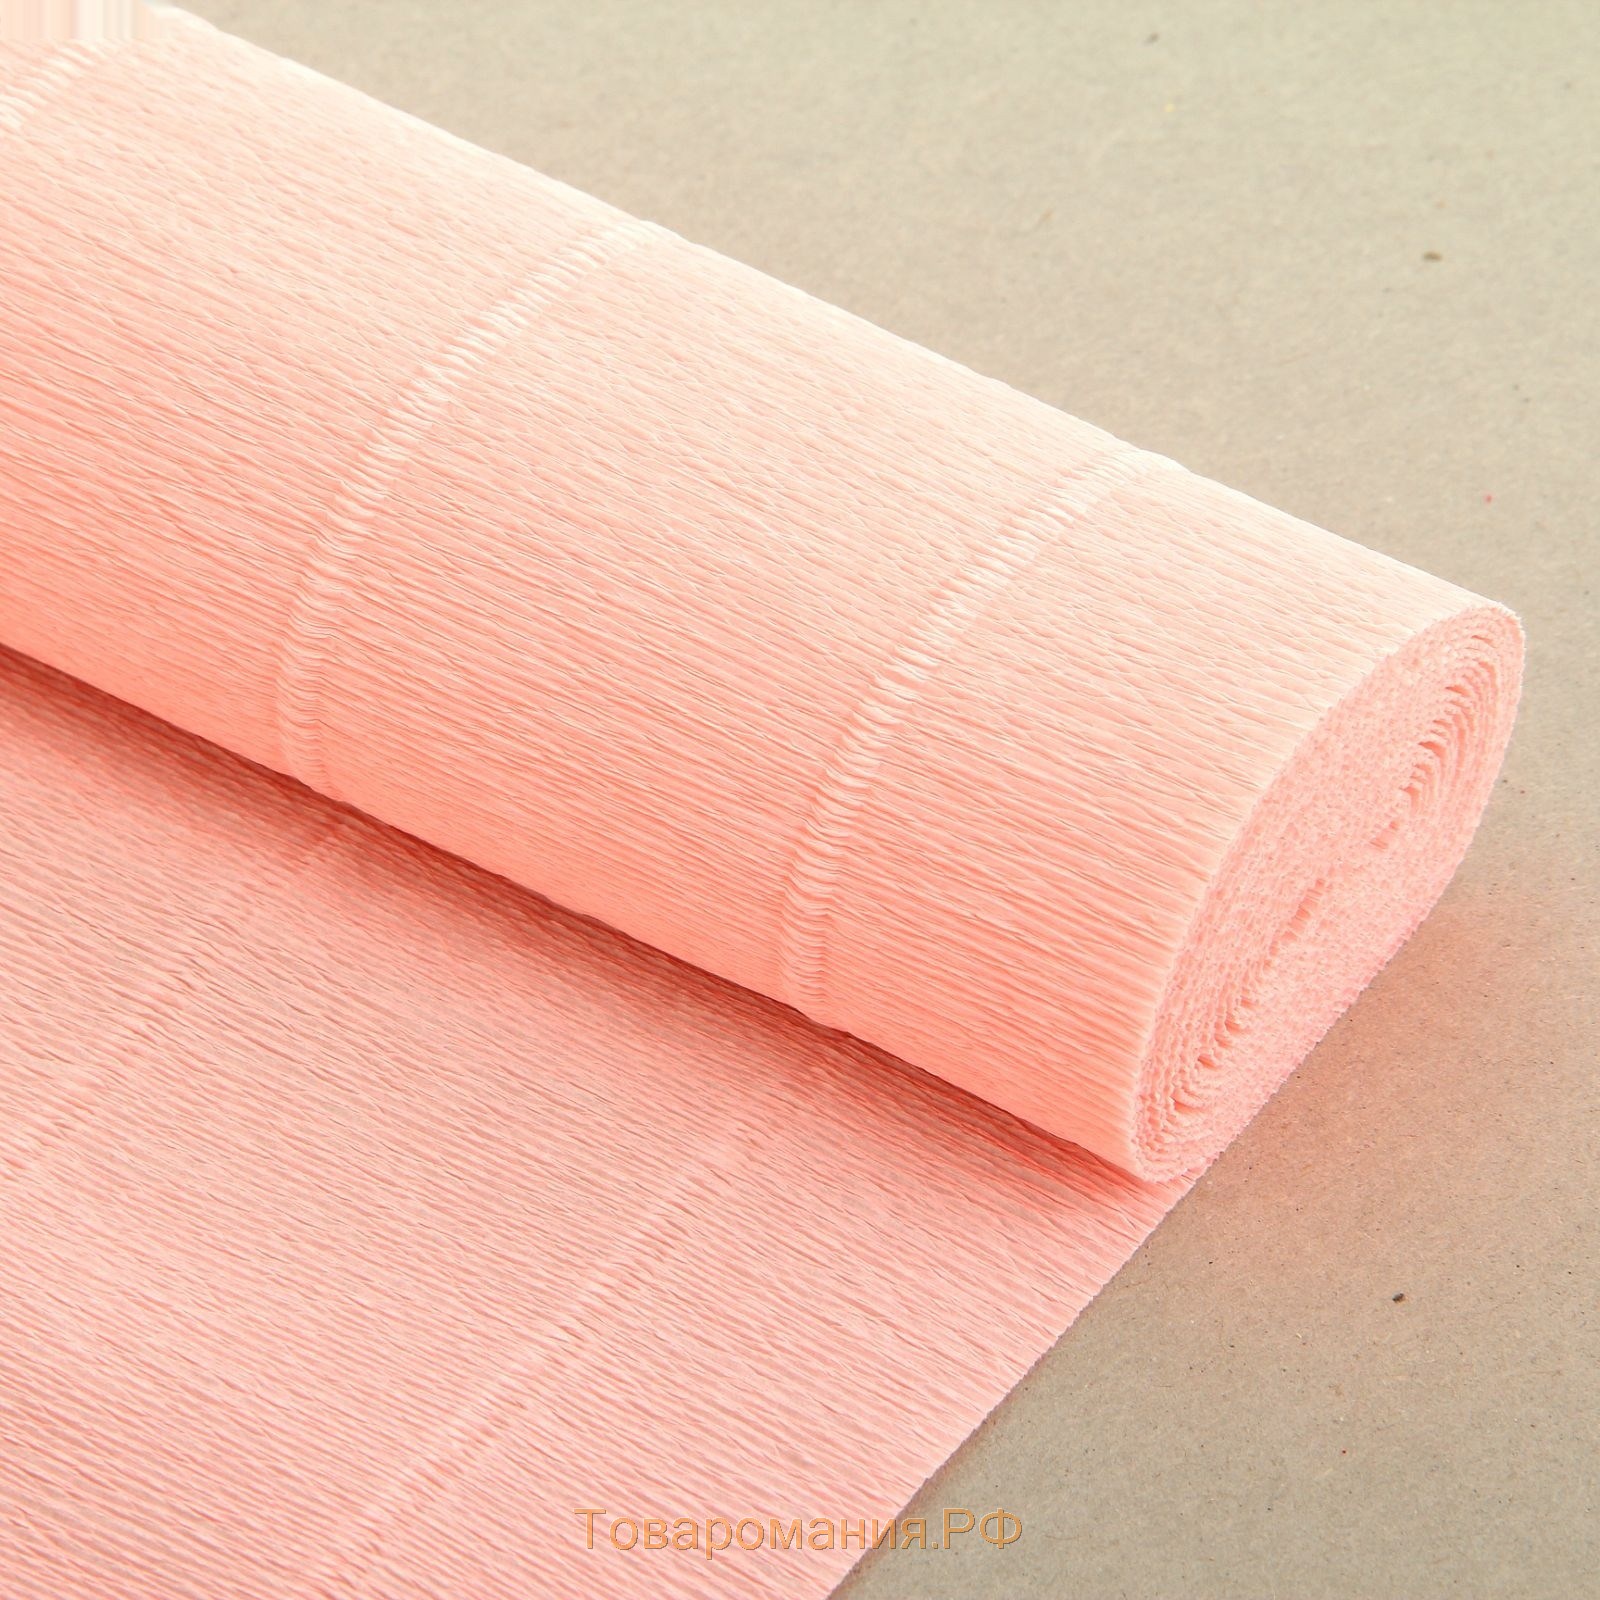 Бумага для упаковок и поделок, гофрированная, светлая, персиковая (камелия), розовая, рулон 1шт., 0,5 х 2,5 м